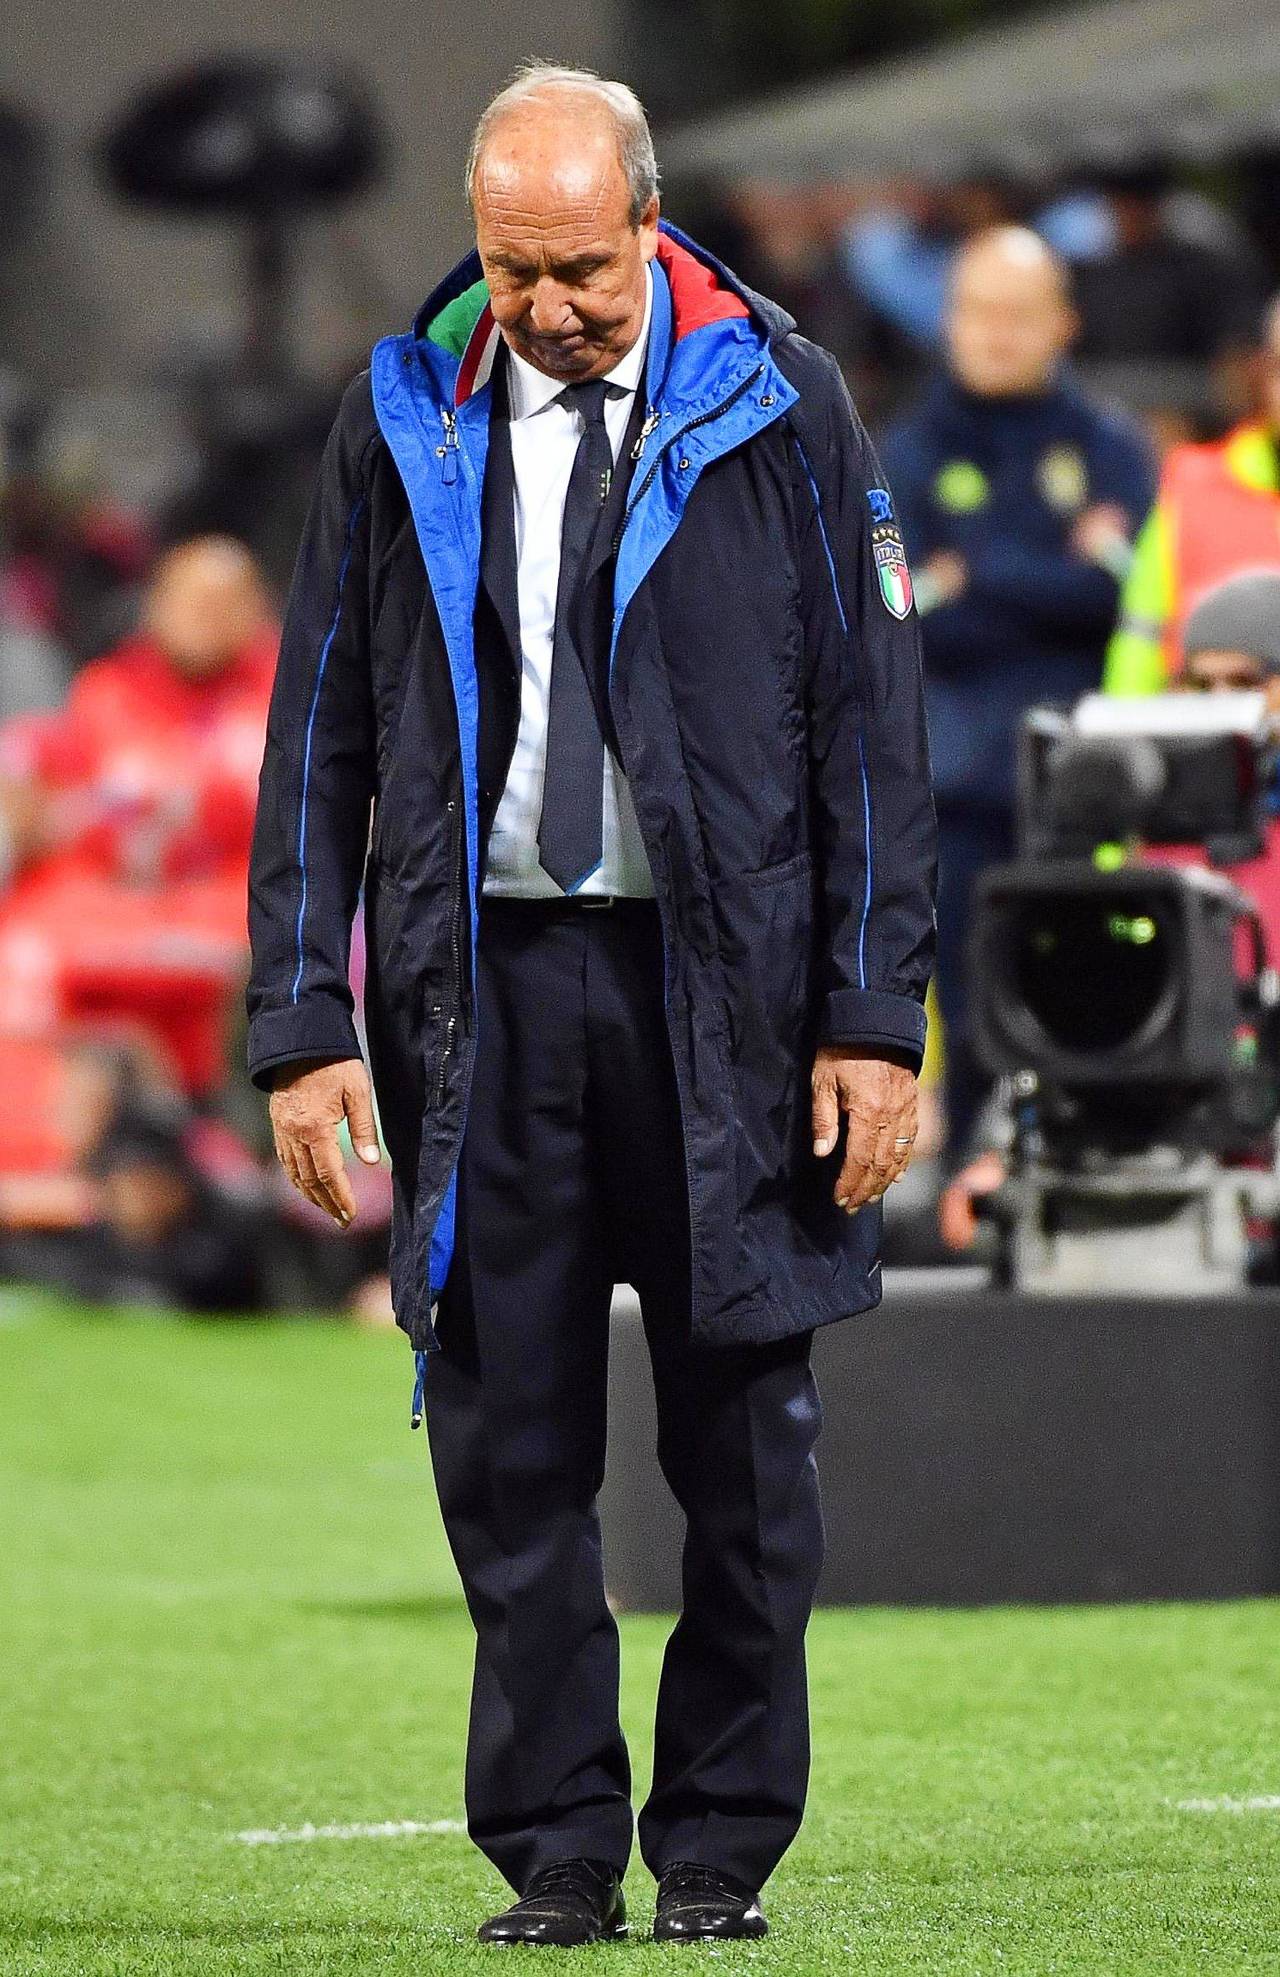 El entrenador de la selección italiana Gian Piero Ventura. Ventura se disculpa, pero no renuncia